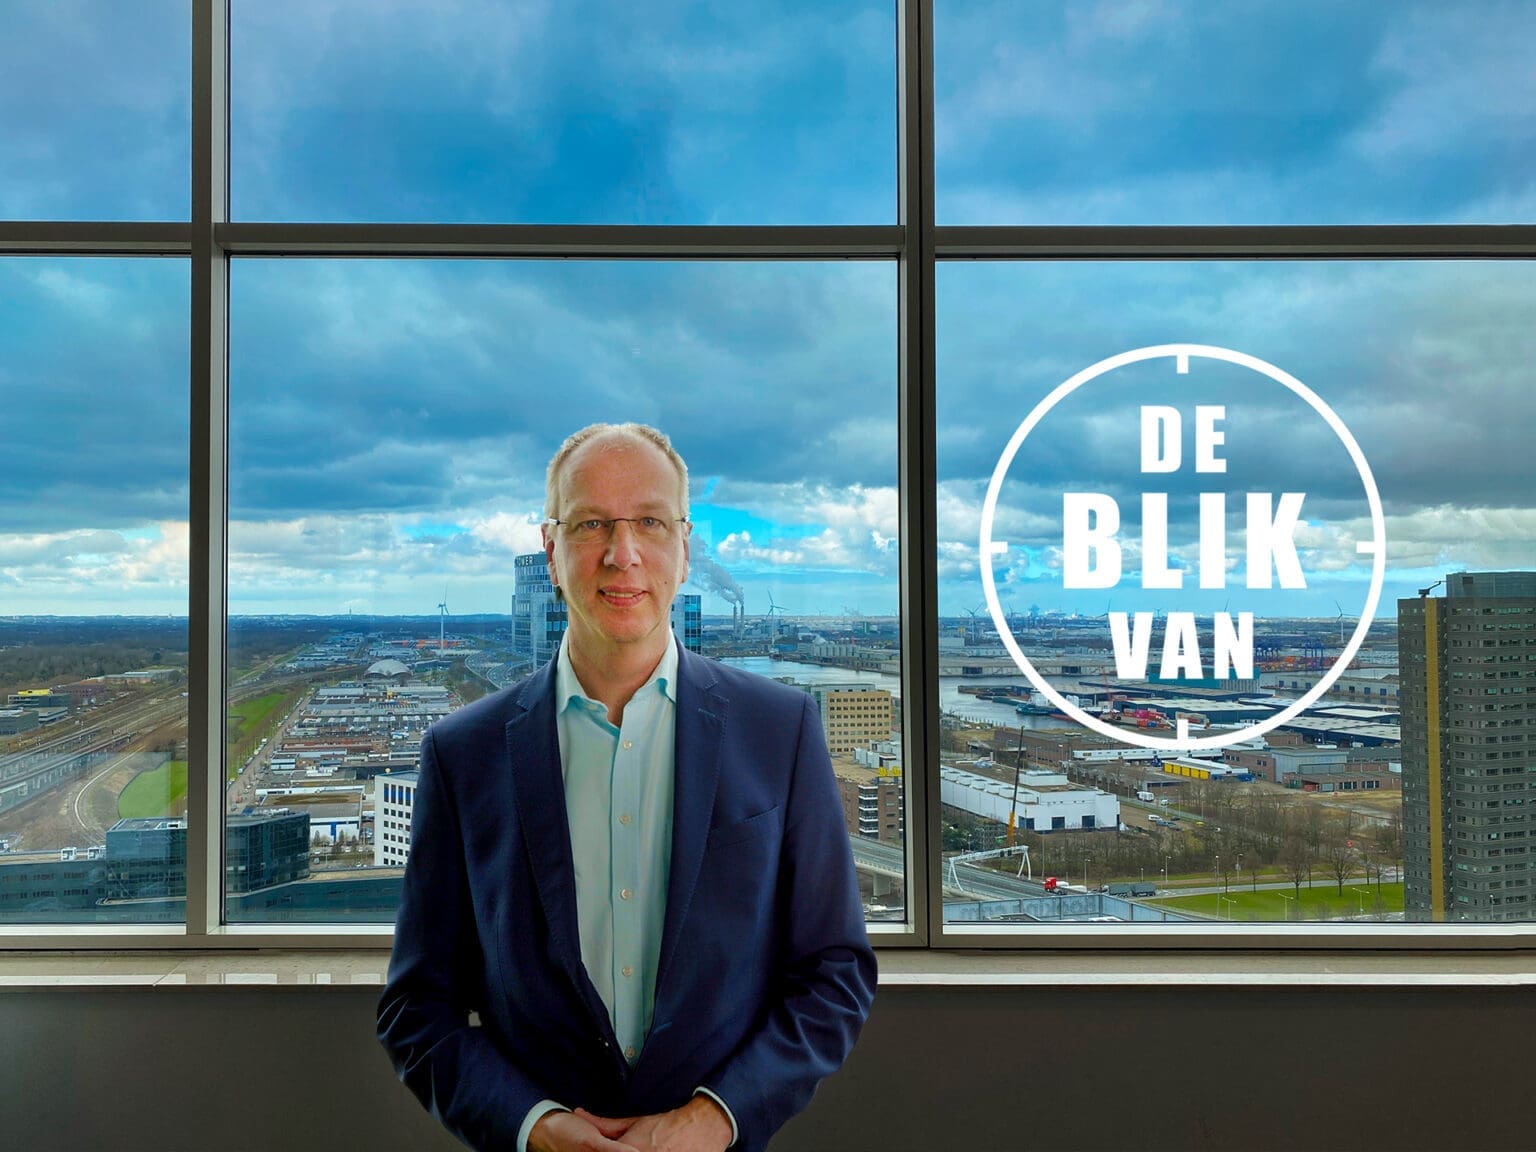 Erik Dannenberg over regelgekte in videoserie De Blik van...